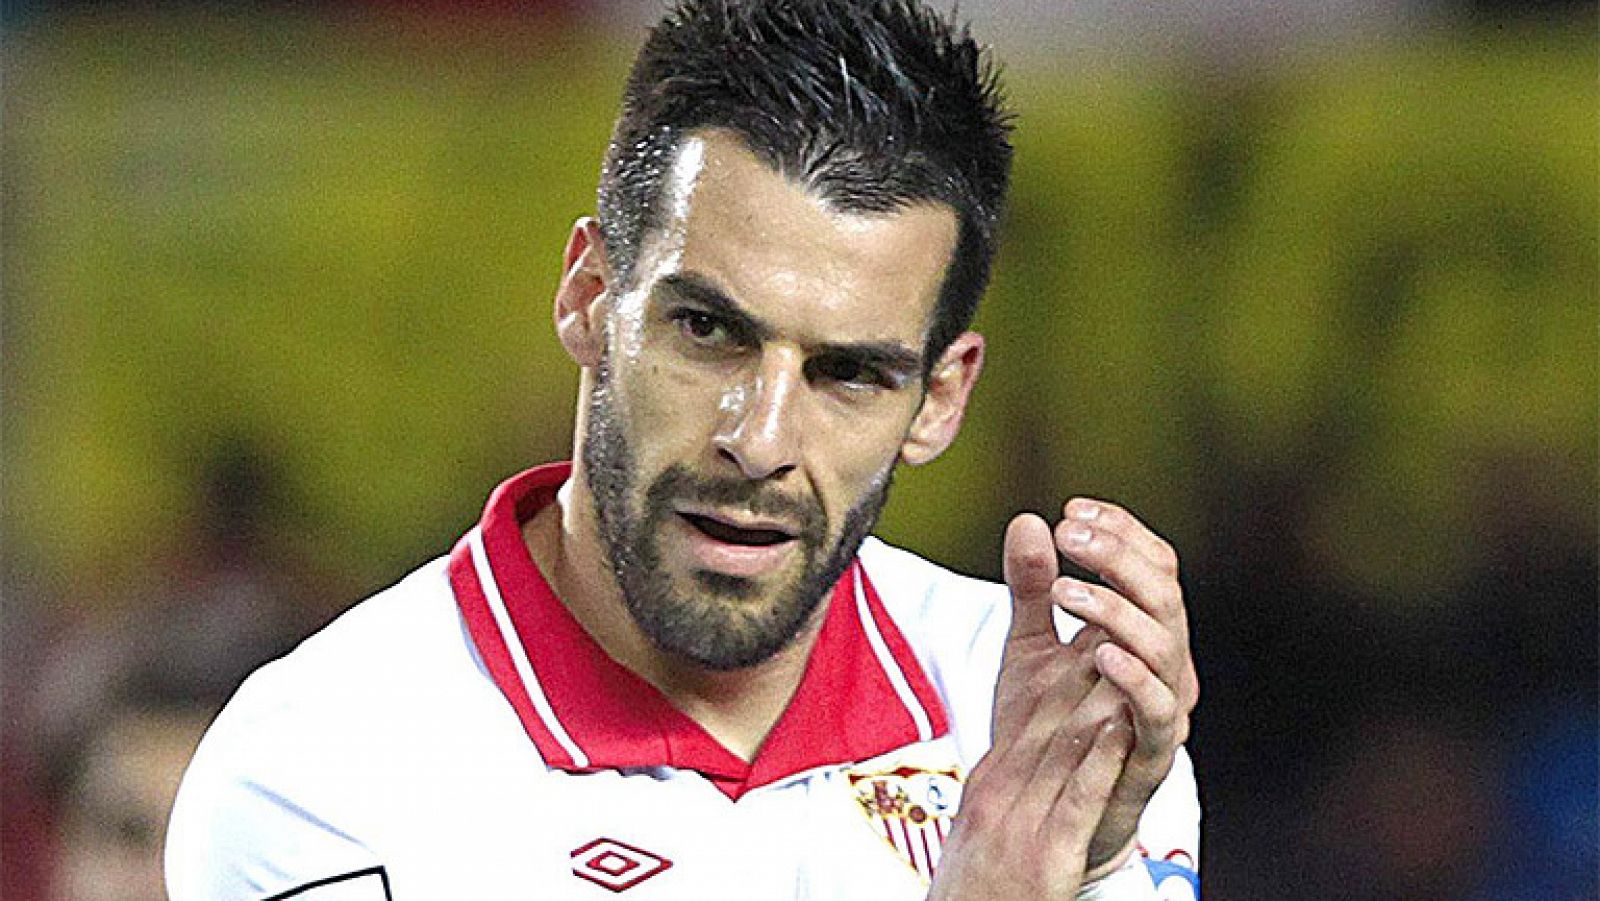 El delantero internacional español abandona el Sevilla para recalar en el Manchester City inglés, que pagará 25 millones por sus servicios.